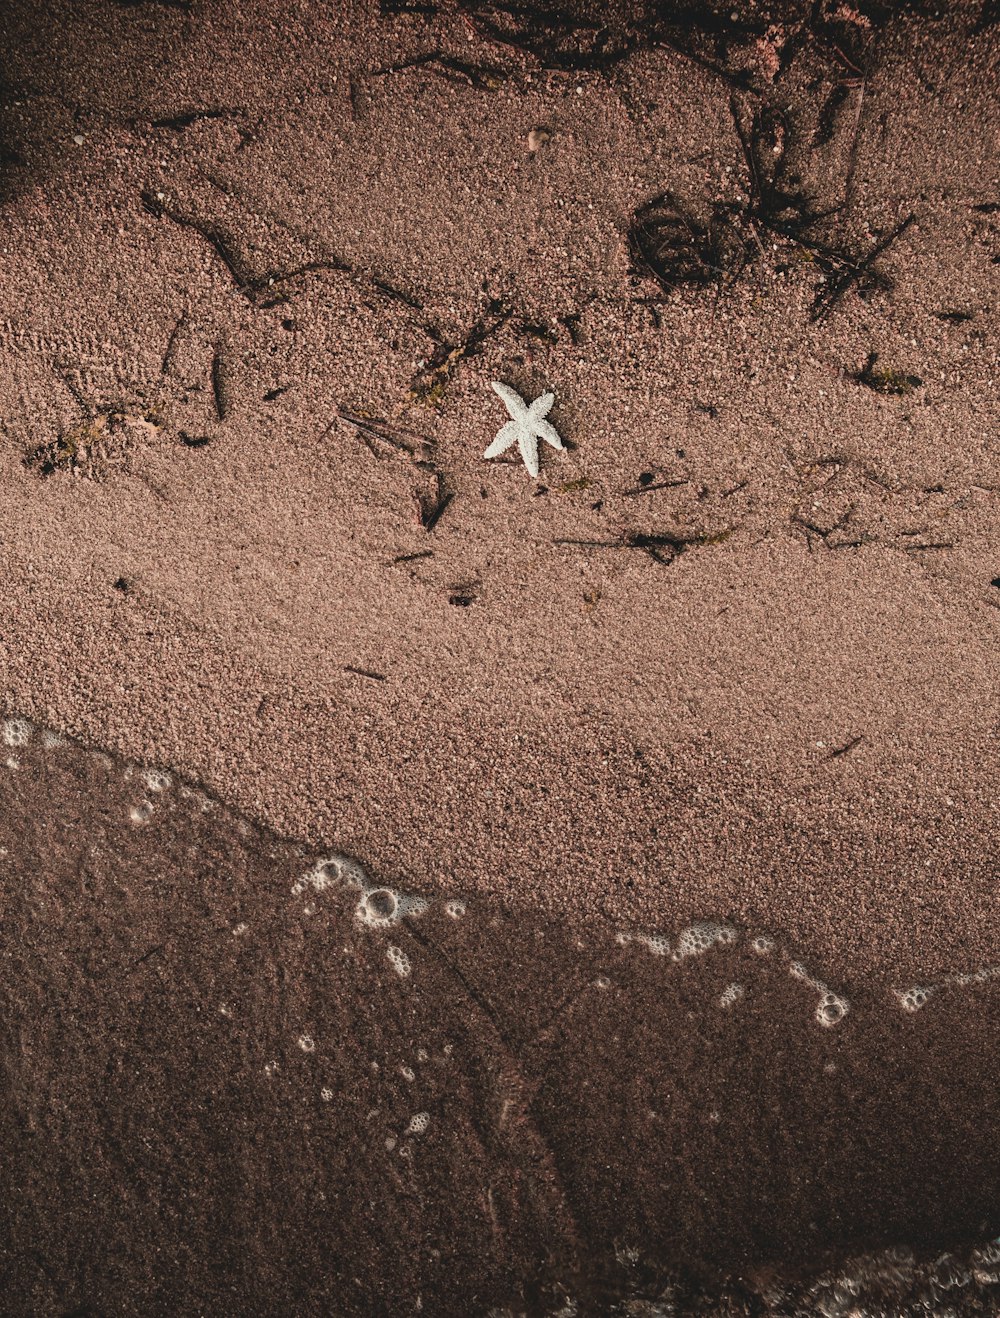 Ein Seestern an einem Sandstrand in der Nähe des Ozeans